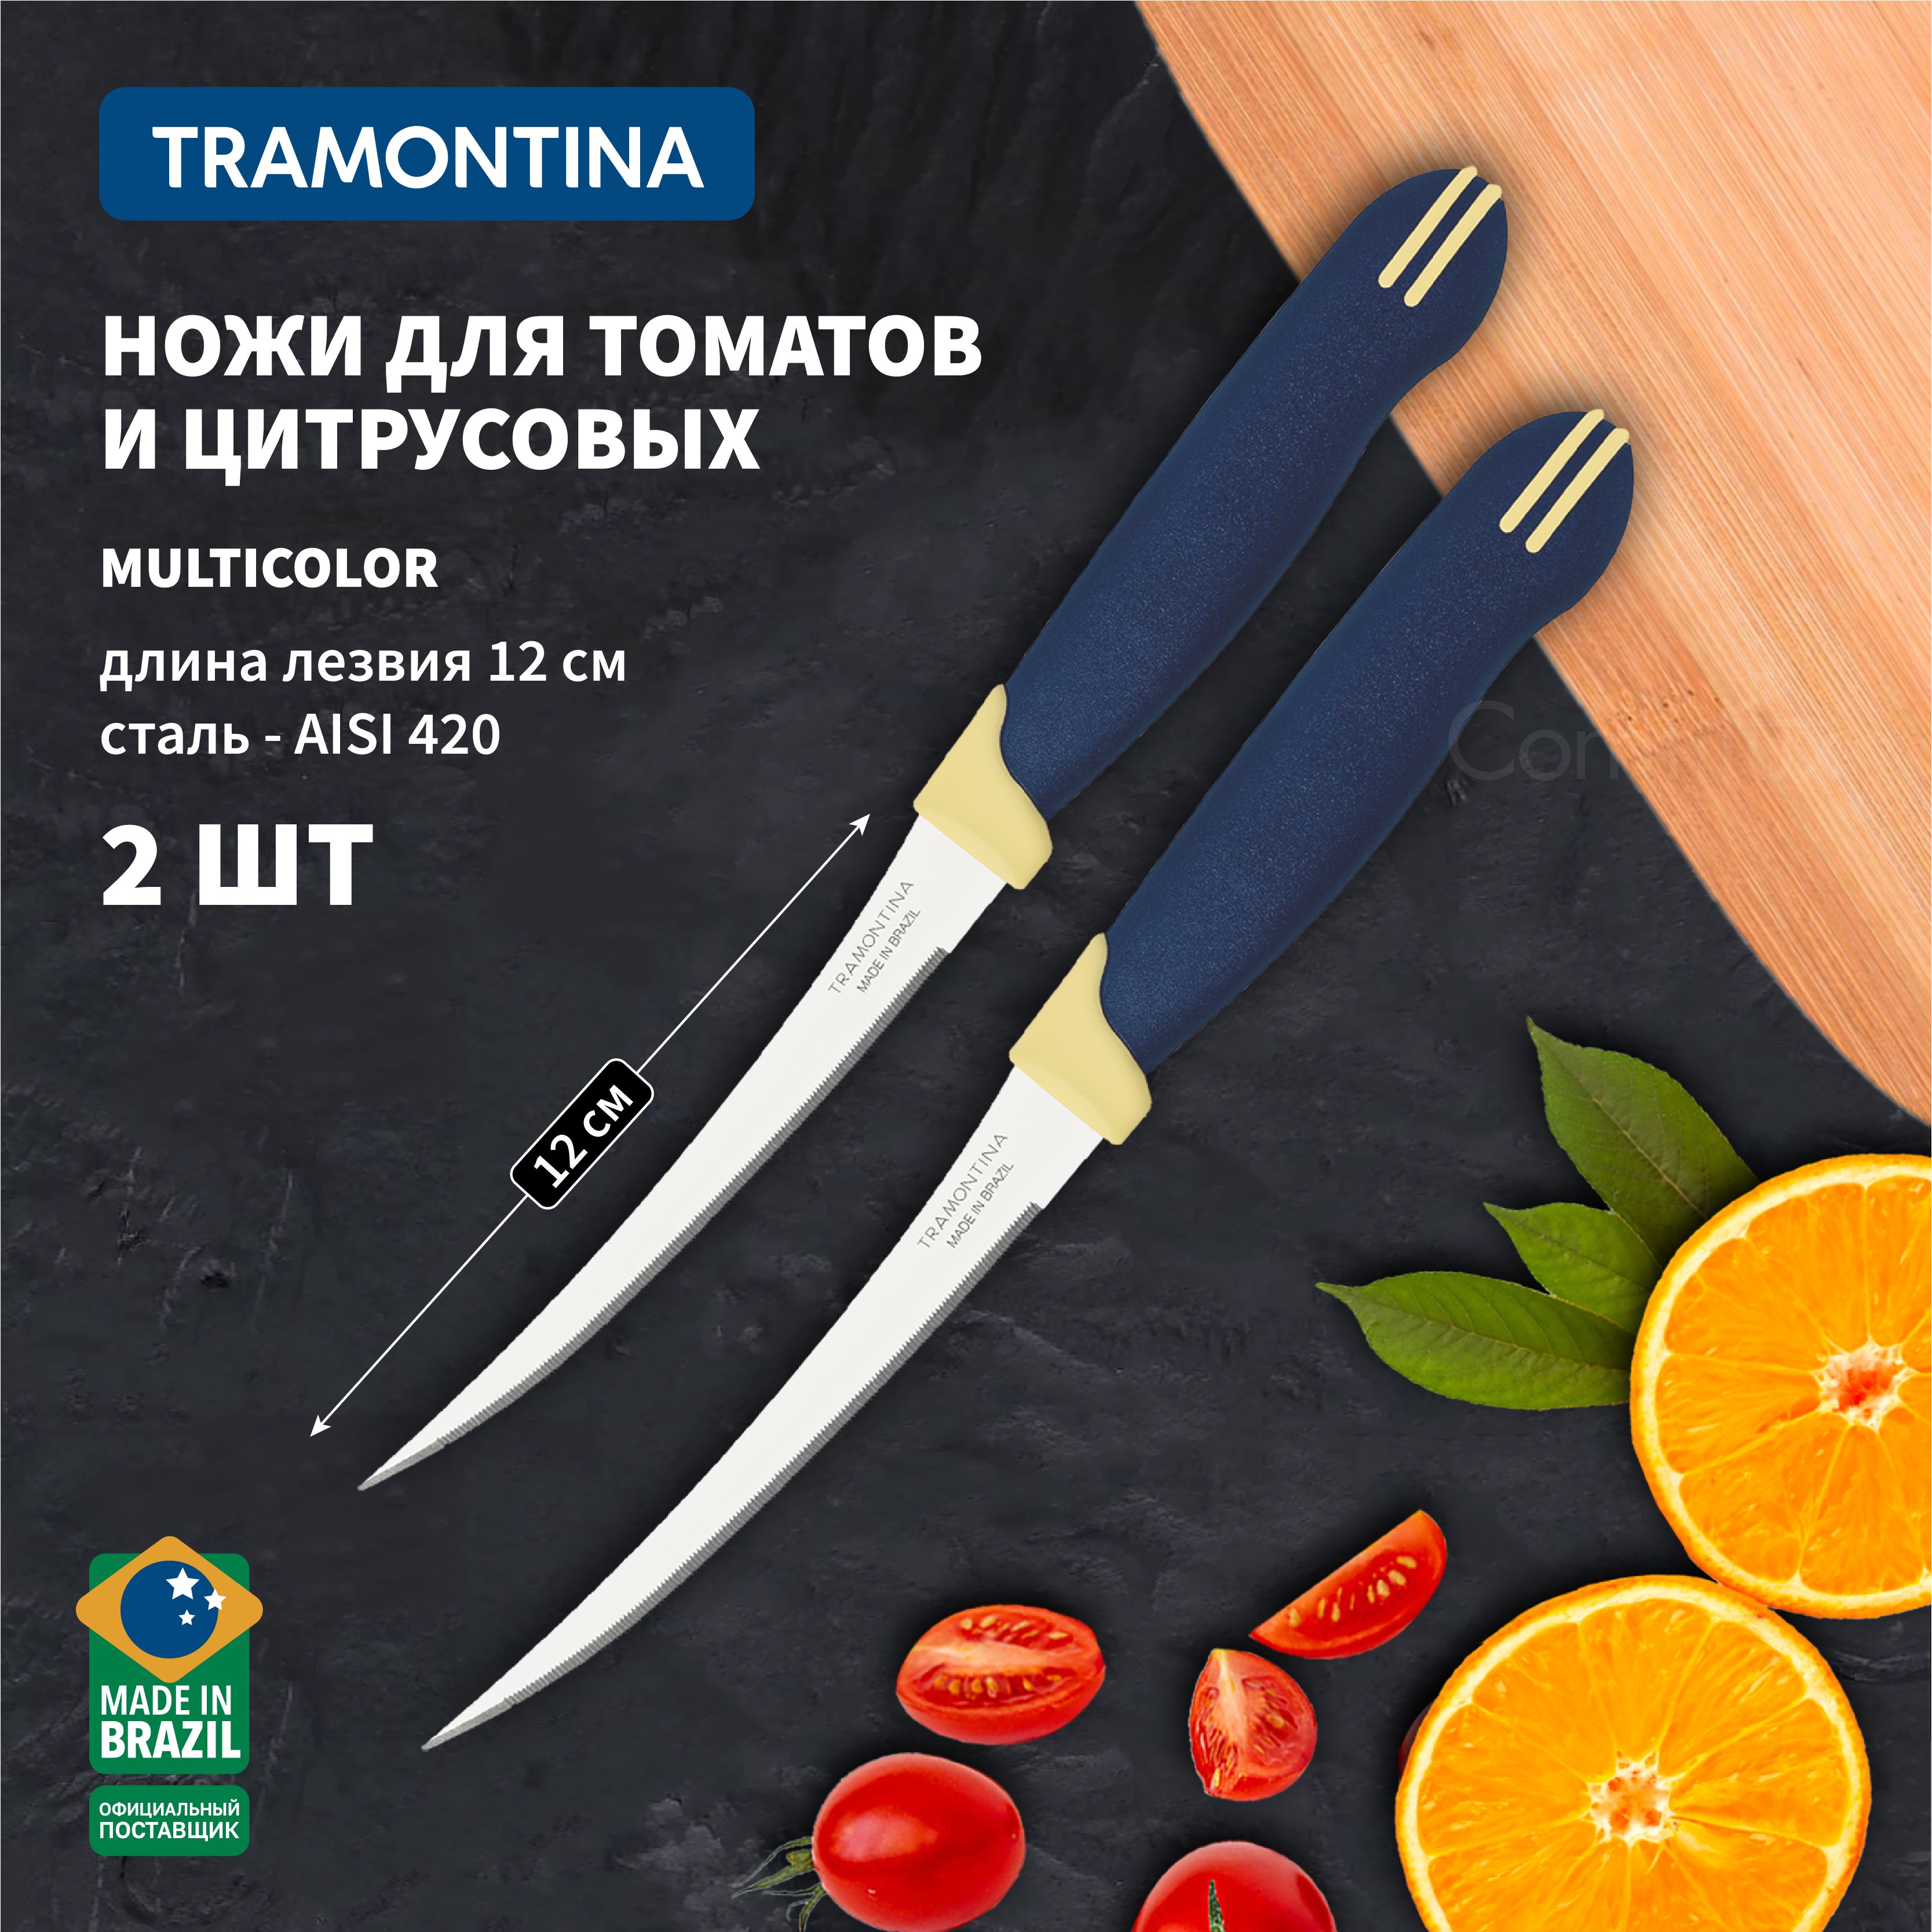 Нож для помидоров. Нож для томатов Tramontina. Помидорный нож Берхов.